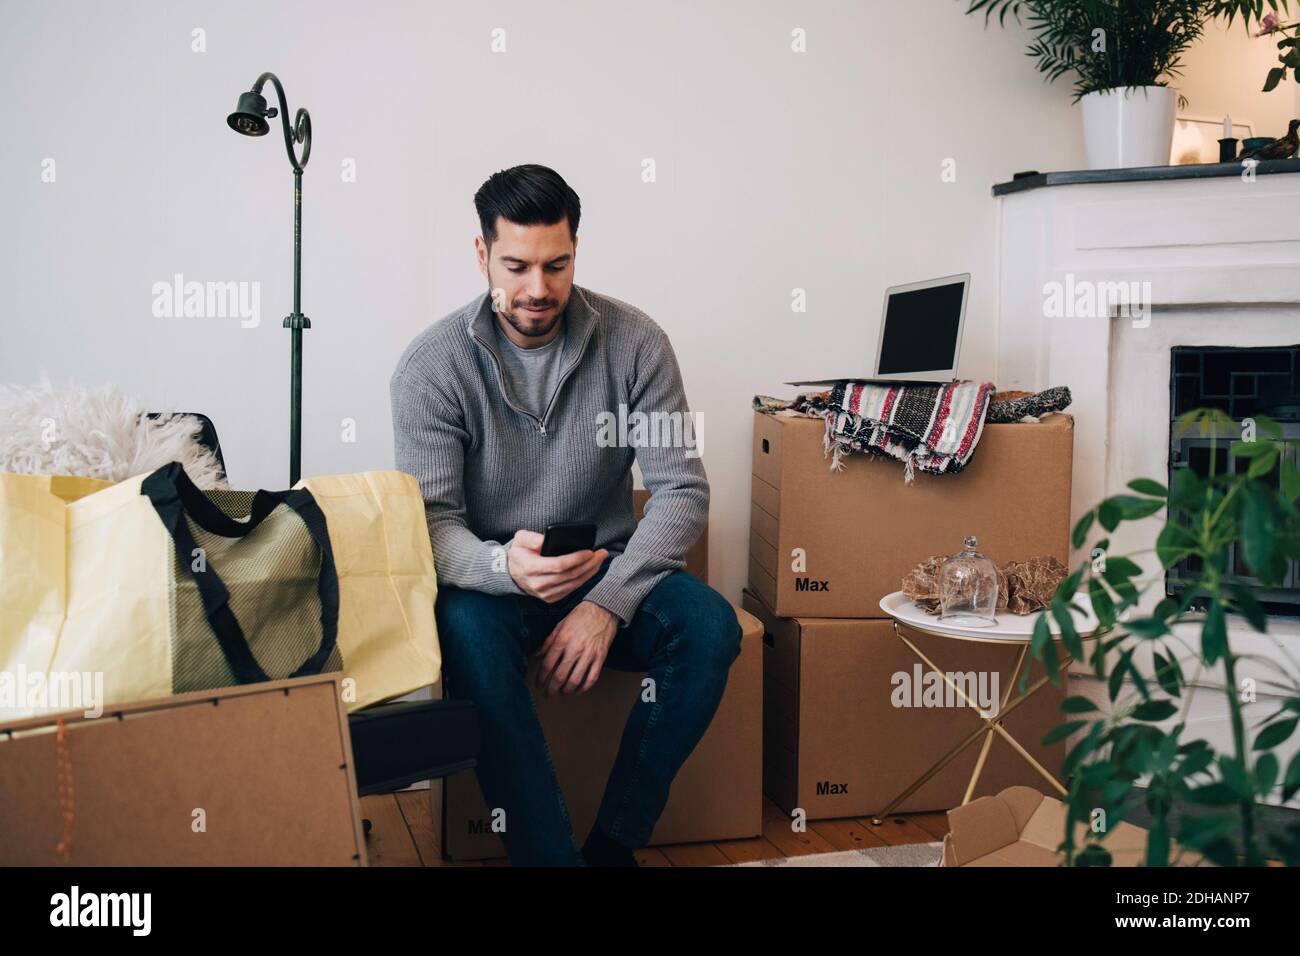 Mann mit mittlerem Erwachsenen, der Mobiltelefon benutzt, während er auf der Box sitzt Zu Hause Stockfoto